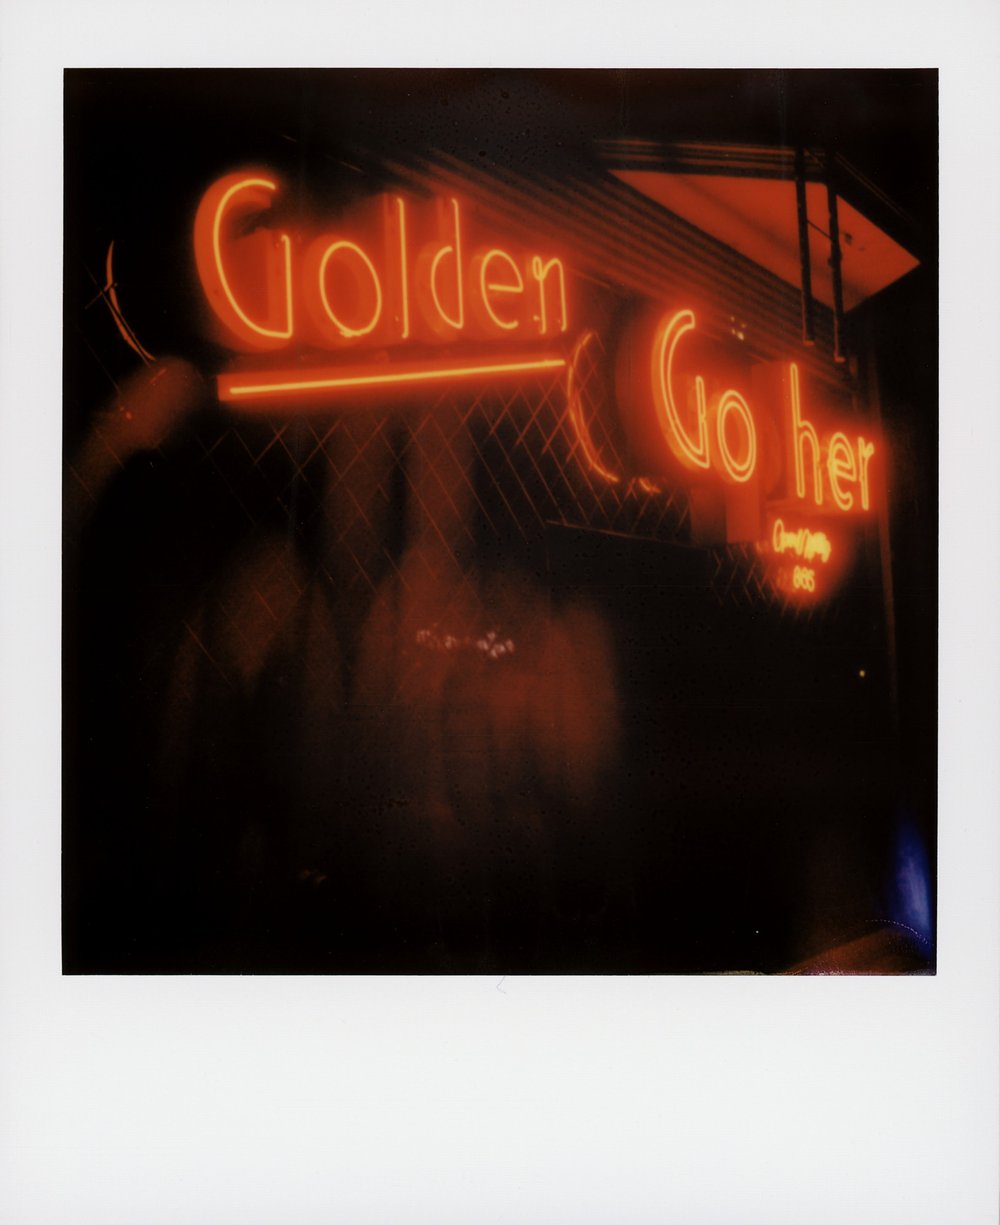 "Golden Go her" by Toby Hancock